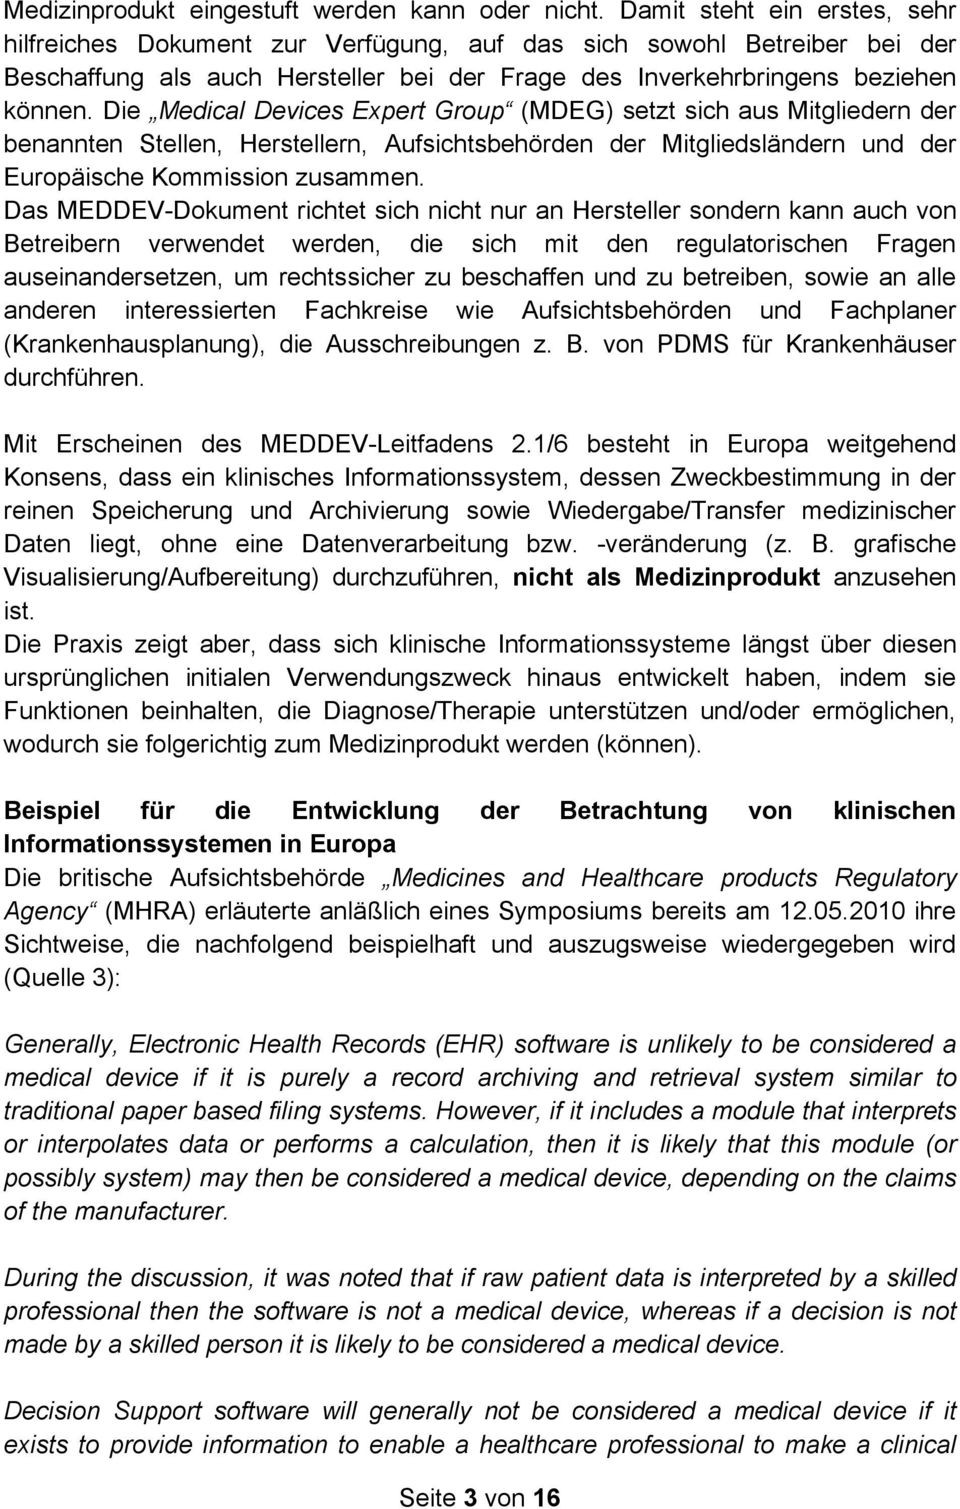 Die Medical Devices Expert Group (MDEG) setzt sich aus Mitgliedern der benannten Stellen, Herstellern, Aufsichtsbehörden der Mitgliedsländern und der Europäische Kommission zusammen.